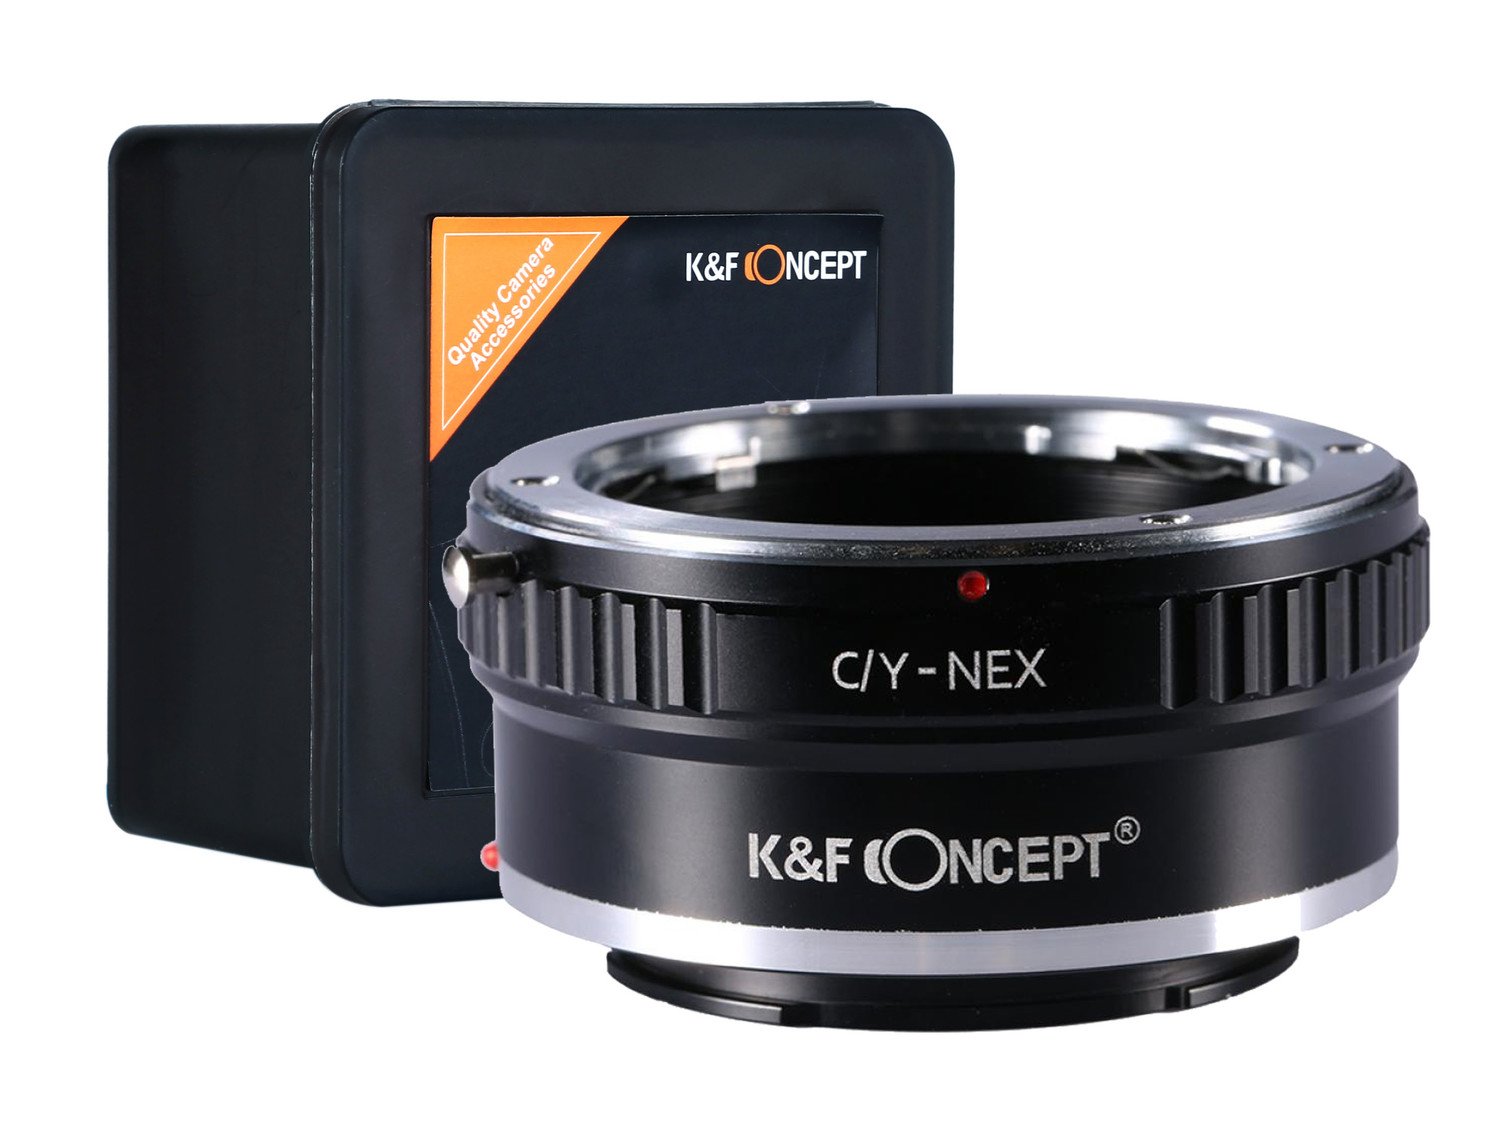 Adaptér K&f Contax C/y Cy na Sony Nex E-mount